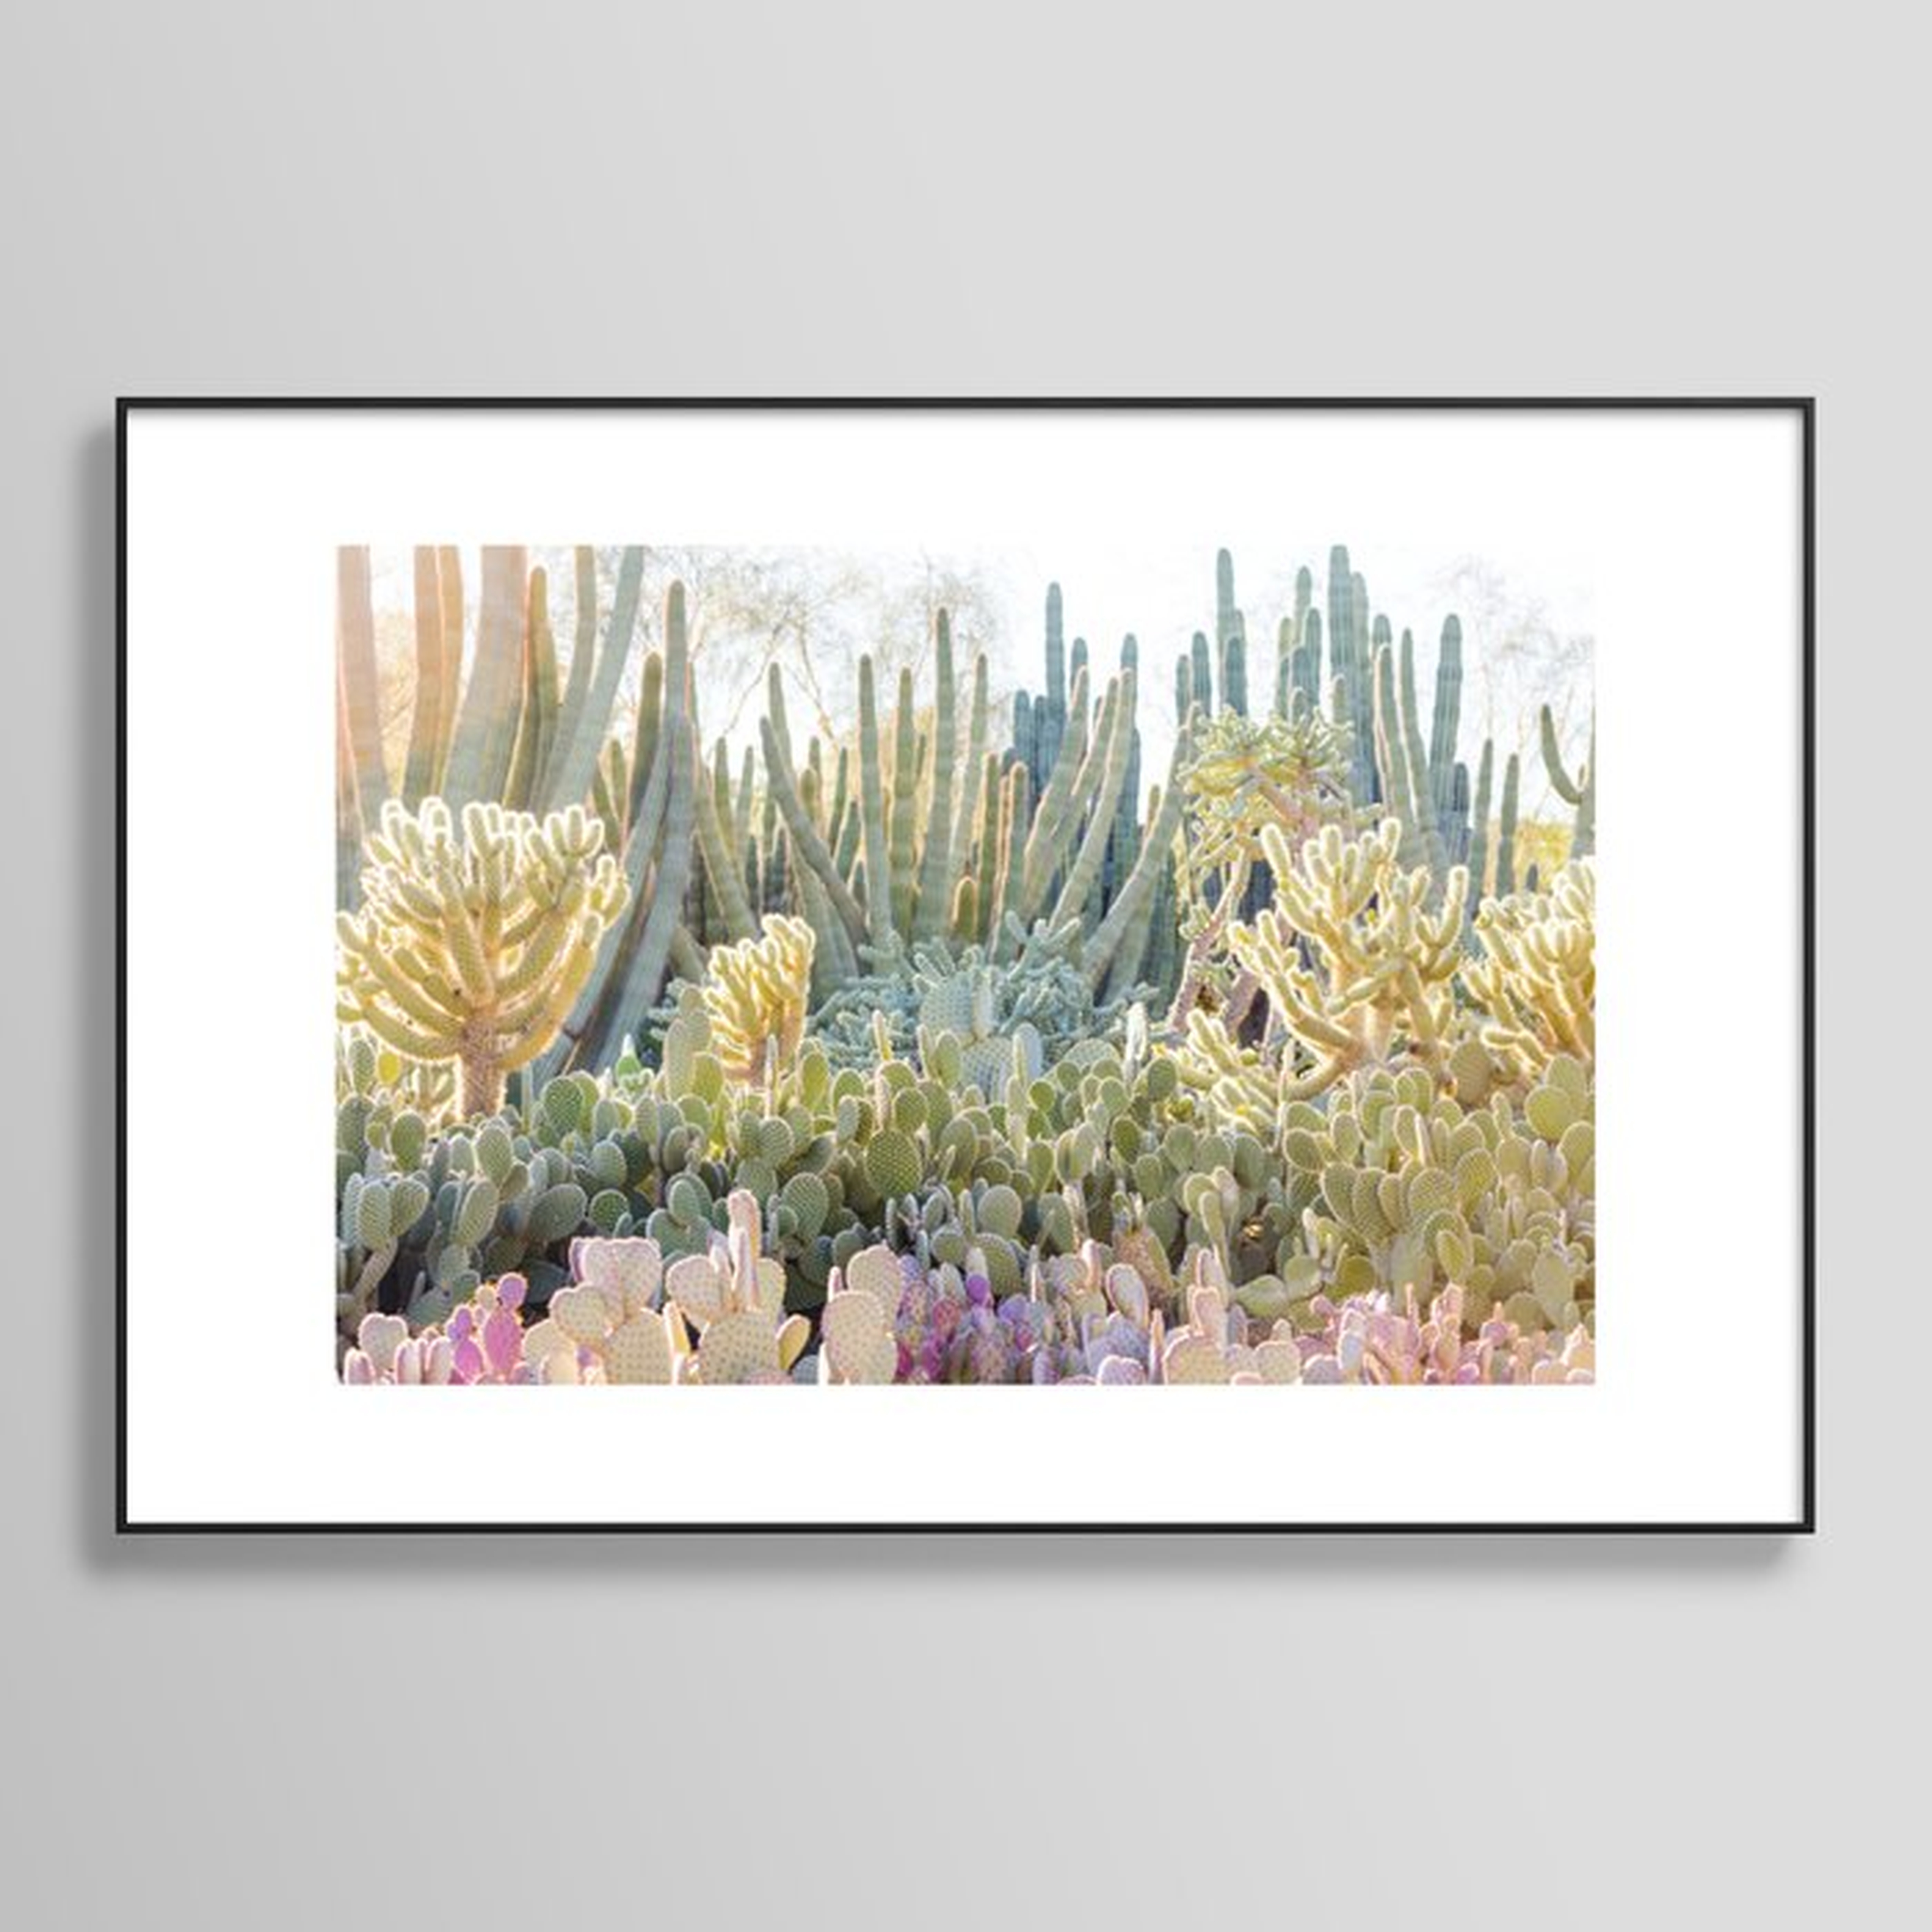 Desert Cactus Framed Art Print  24"x36" // Black metallic frame - Society6